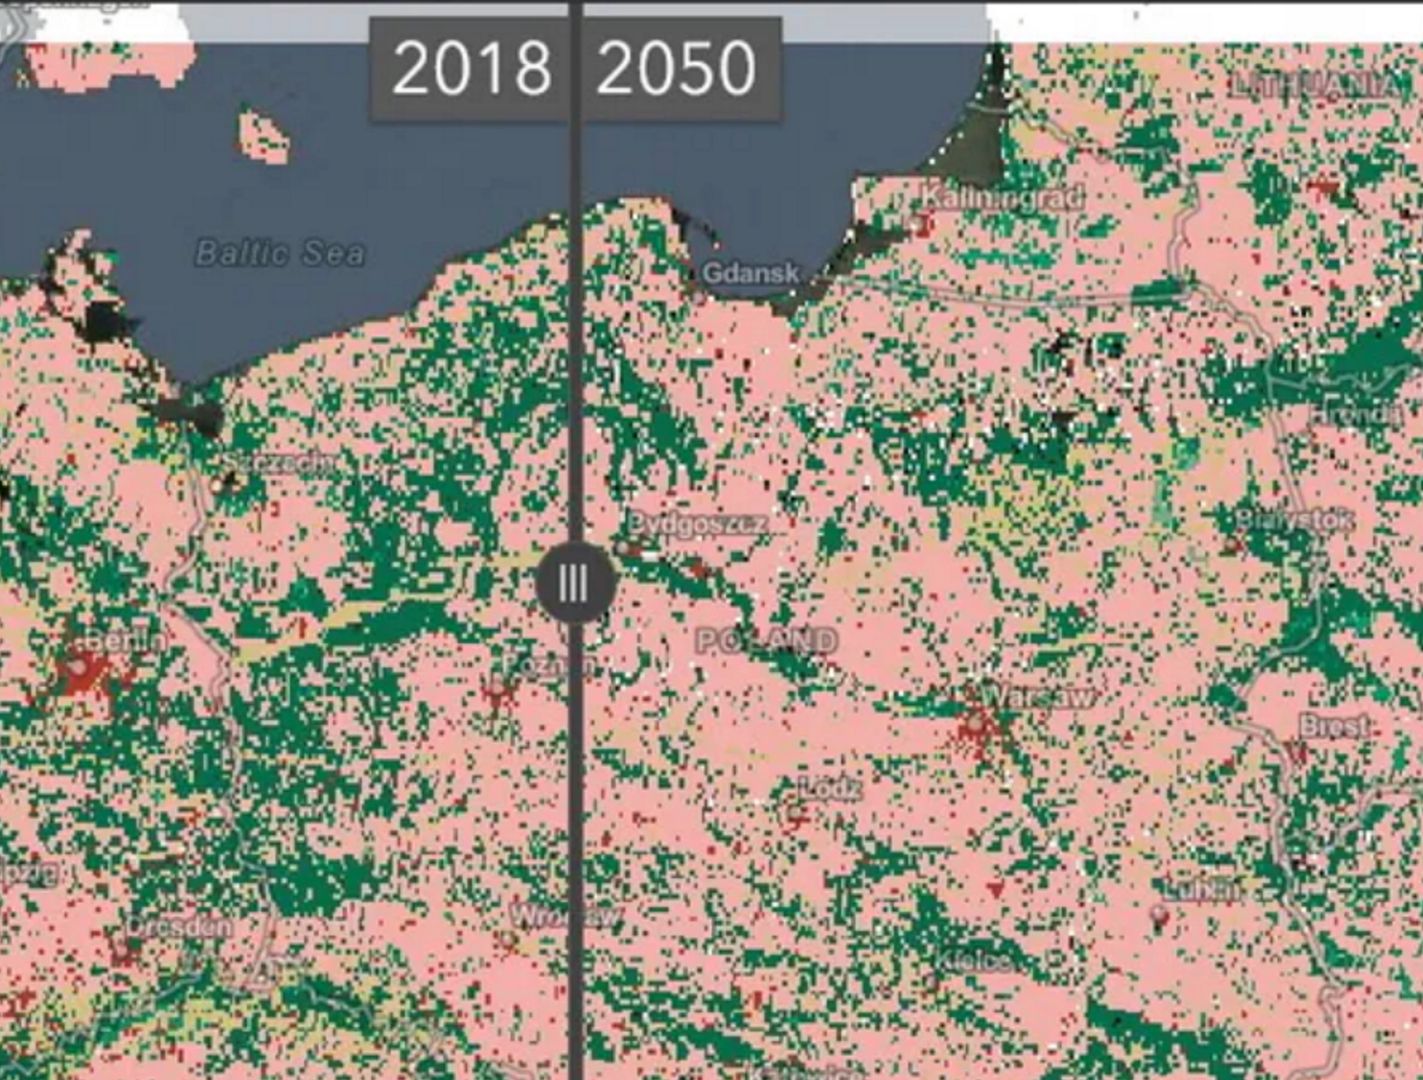 Tak będzie wyglądała Polska w 2050 roku. Naukowcy pokazali mapę